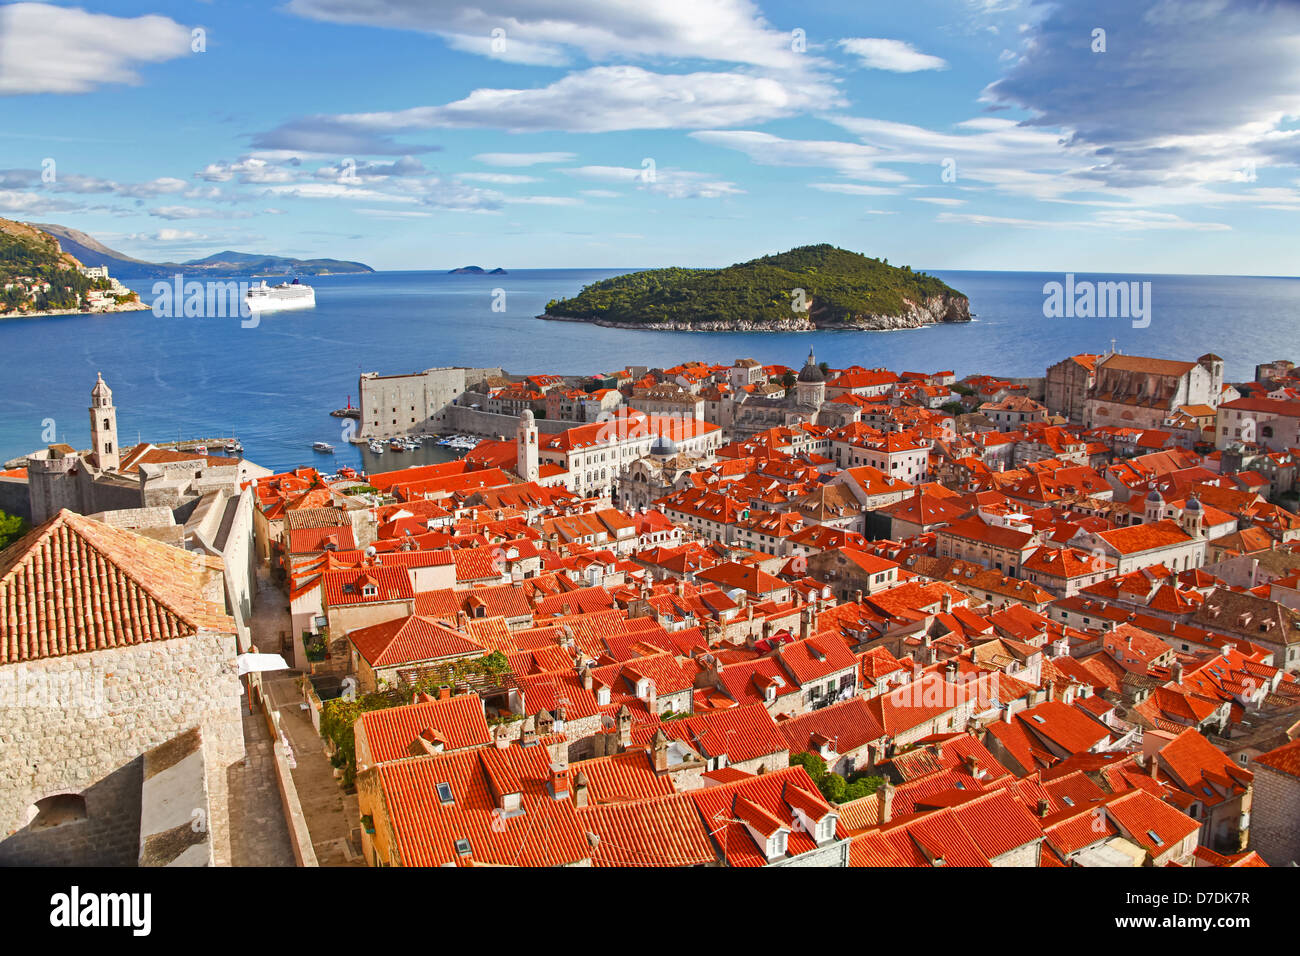 Vista di molti punti di interesse del centro storico della città di Dubrovnik, Croazia. Classico rosso sui tetti della città con il mare Adriatico e isola Foto Stock